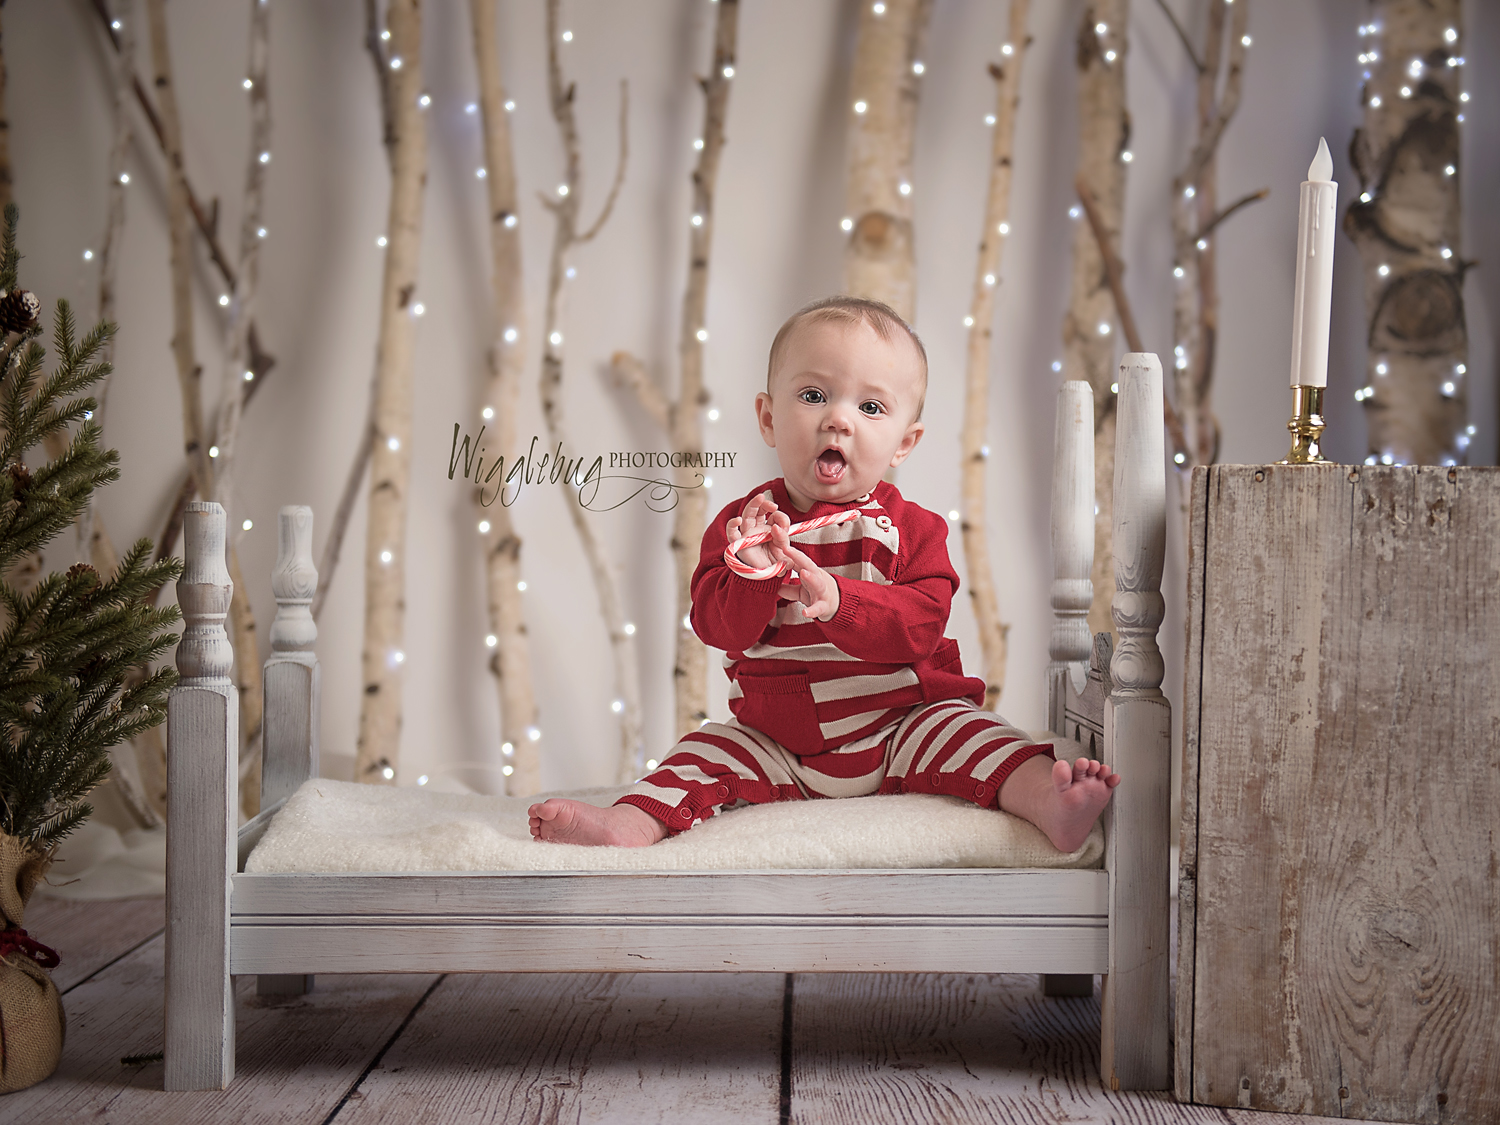 2018 Christmas Mini Sessions Wigglebug Photography Newborn